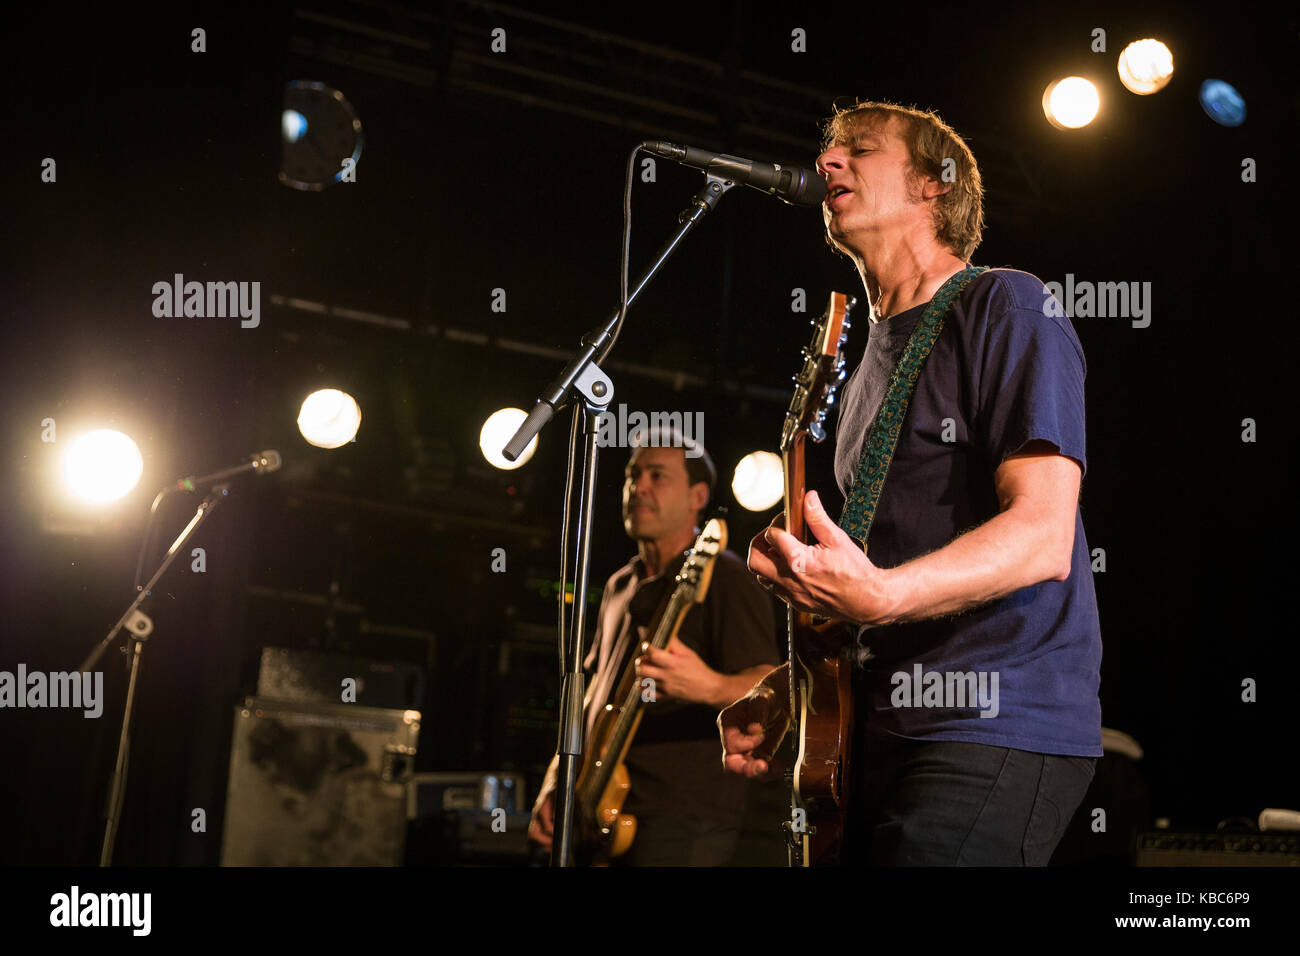 Die amerikanische Alternative-Rock-Band Mudhoney spielt ein Live-Konzert im Parkteatret in Oslo. Hier ist Sänger und Musiker Mark Arm live auf der Bühne zu sehen. Norwegen, 21/07 2016. Stockfoto